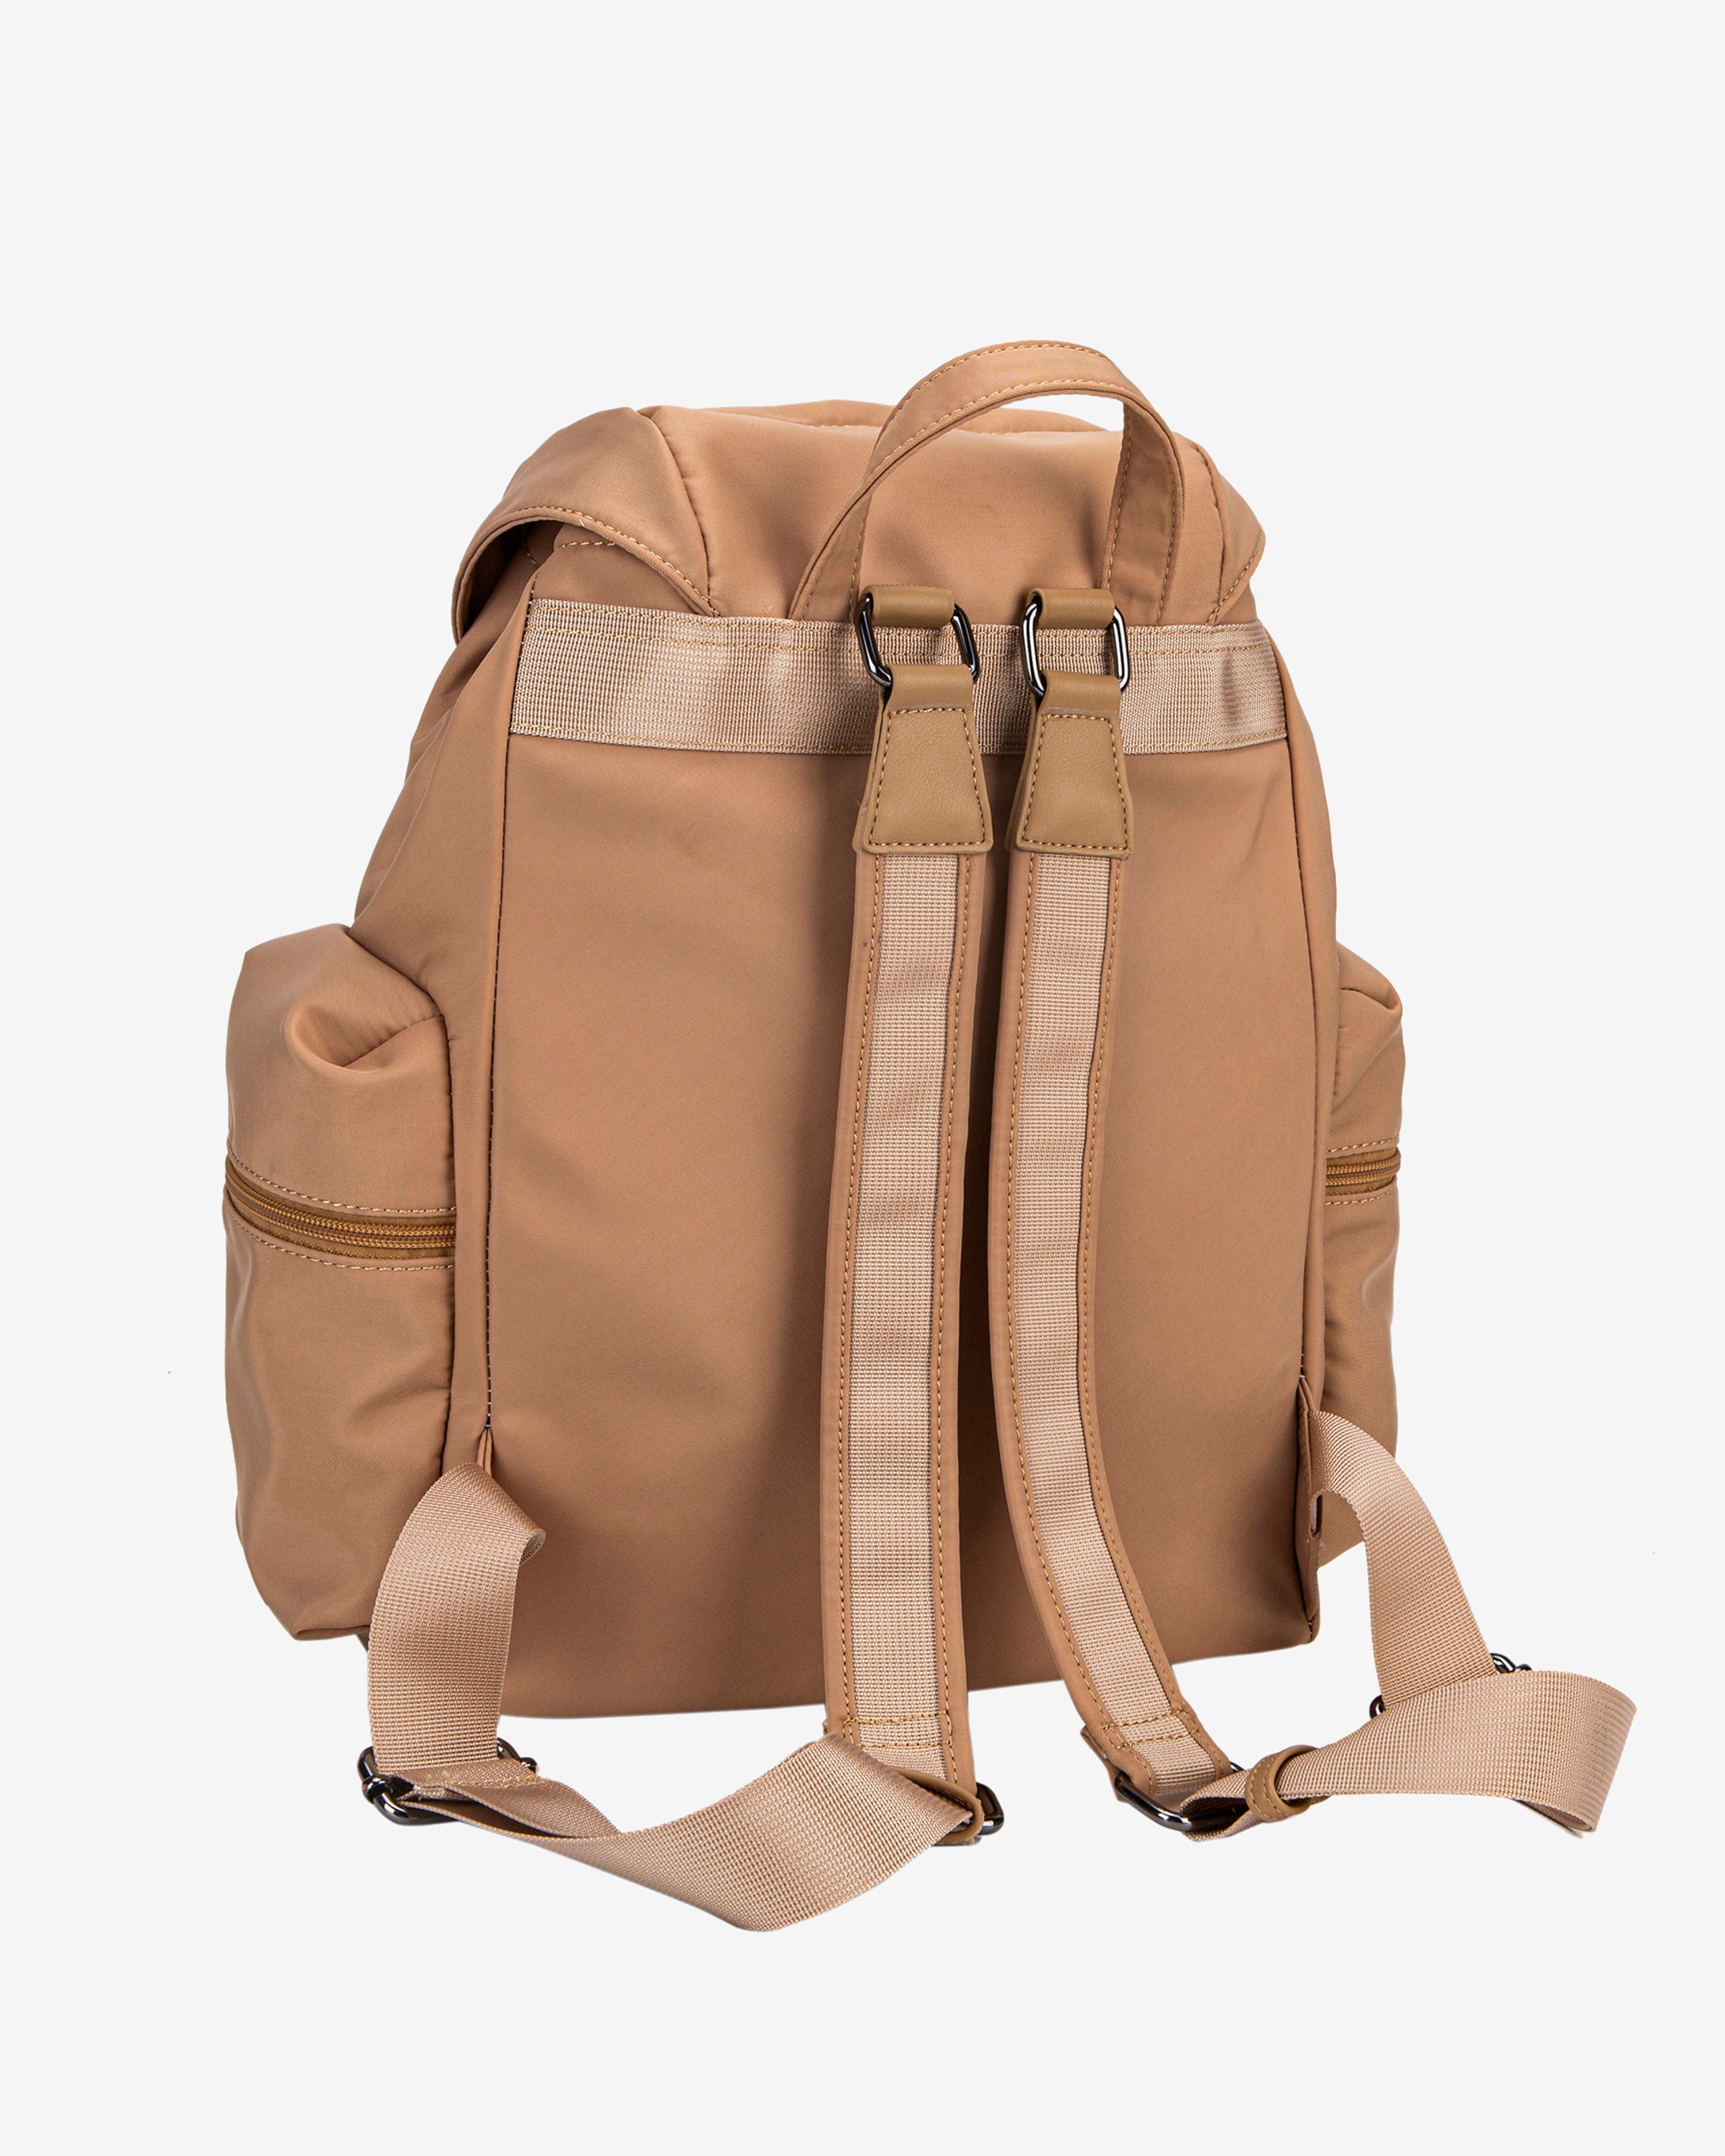 HVISK NOMAD MATTE TWILL Backpack 432 Tan Brown